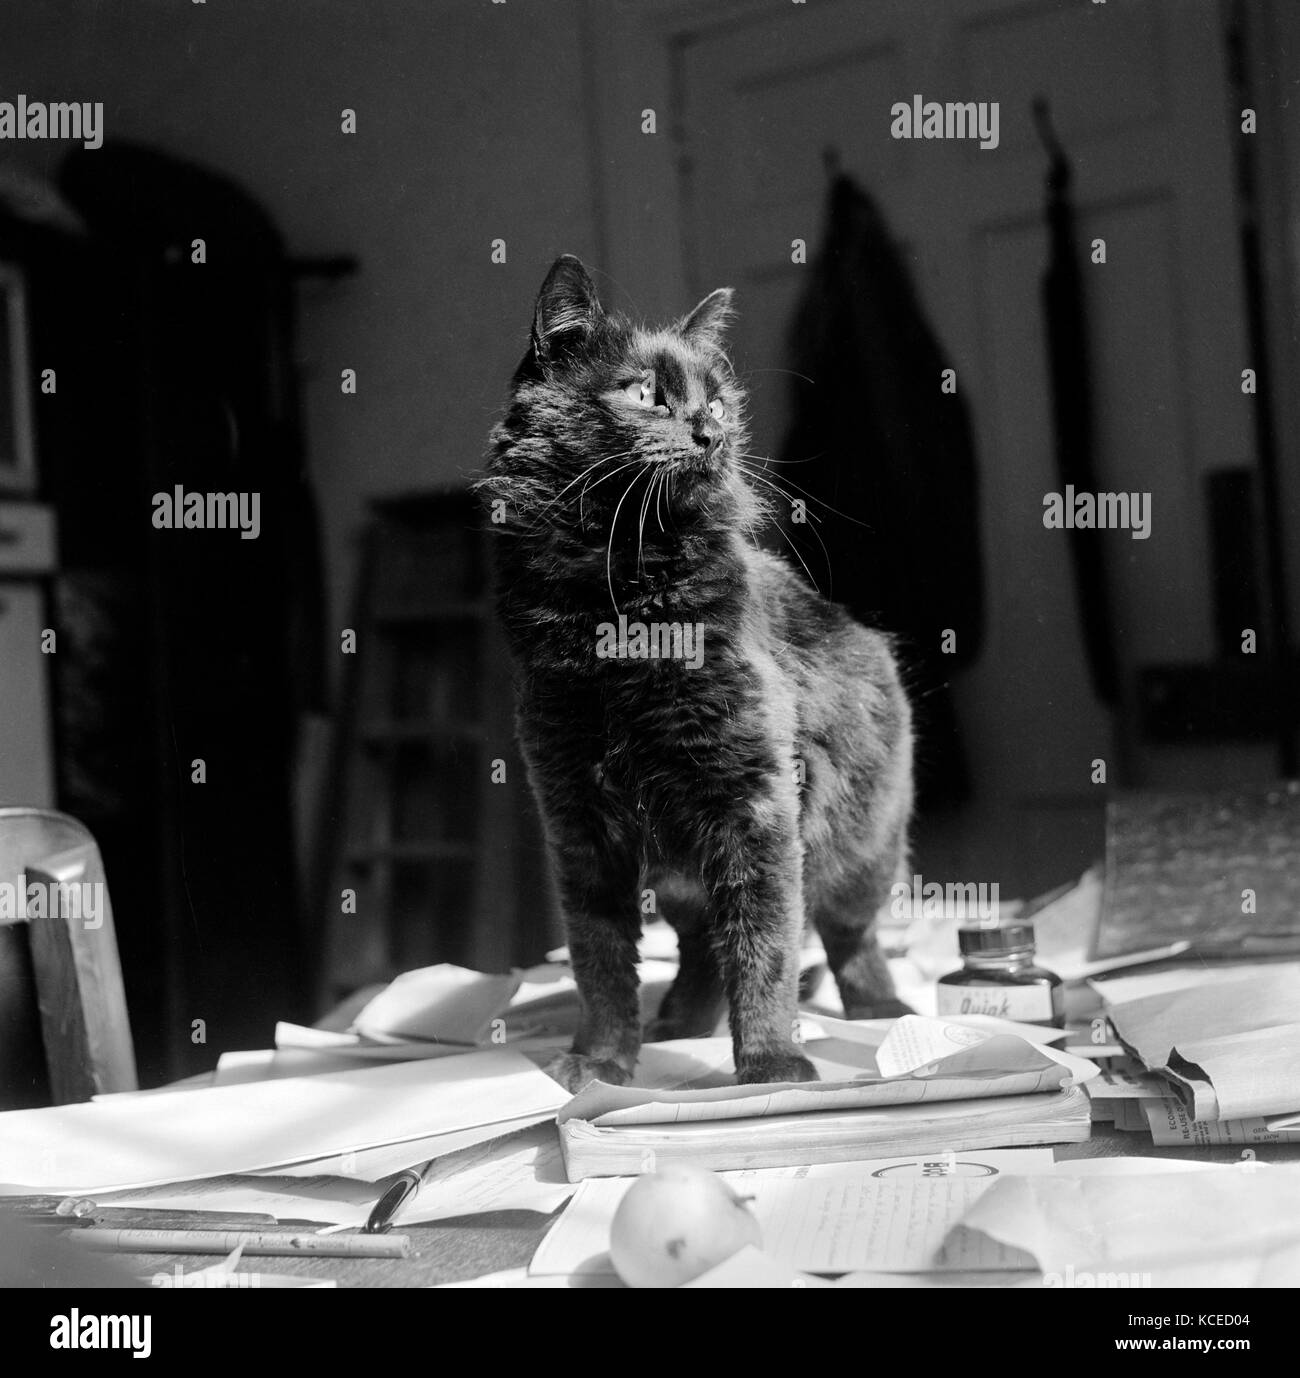 Un chat noir à poil court se tient sur des papiers sur un bureau. peut-être en newbarn, île de Wight. photographié par john gay, 1960. Banque D'Images